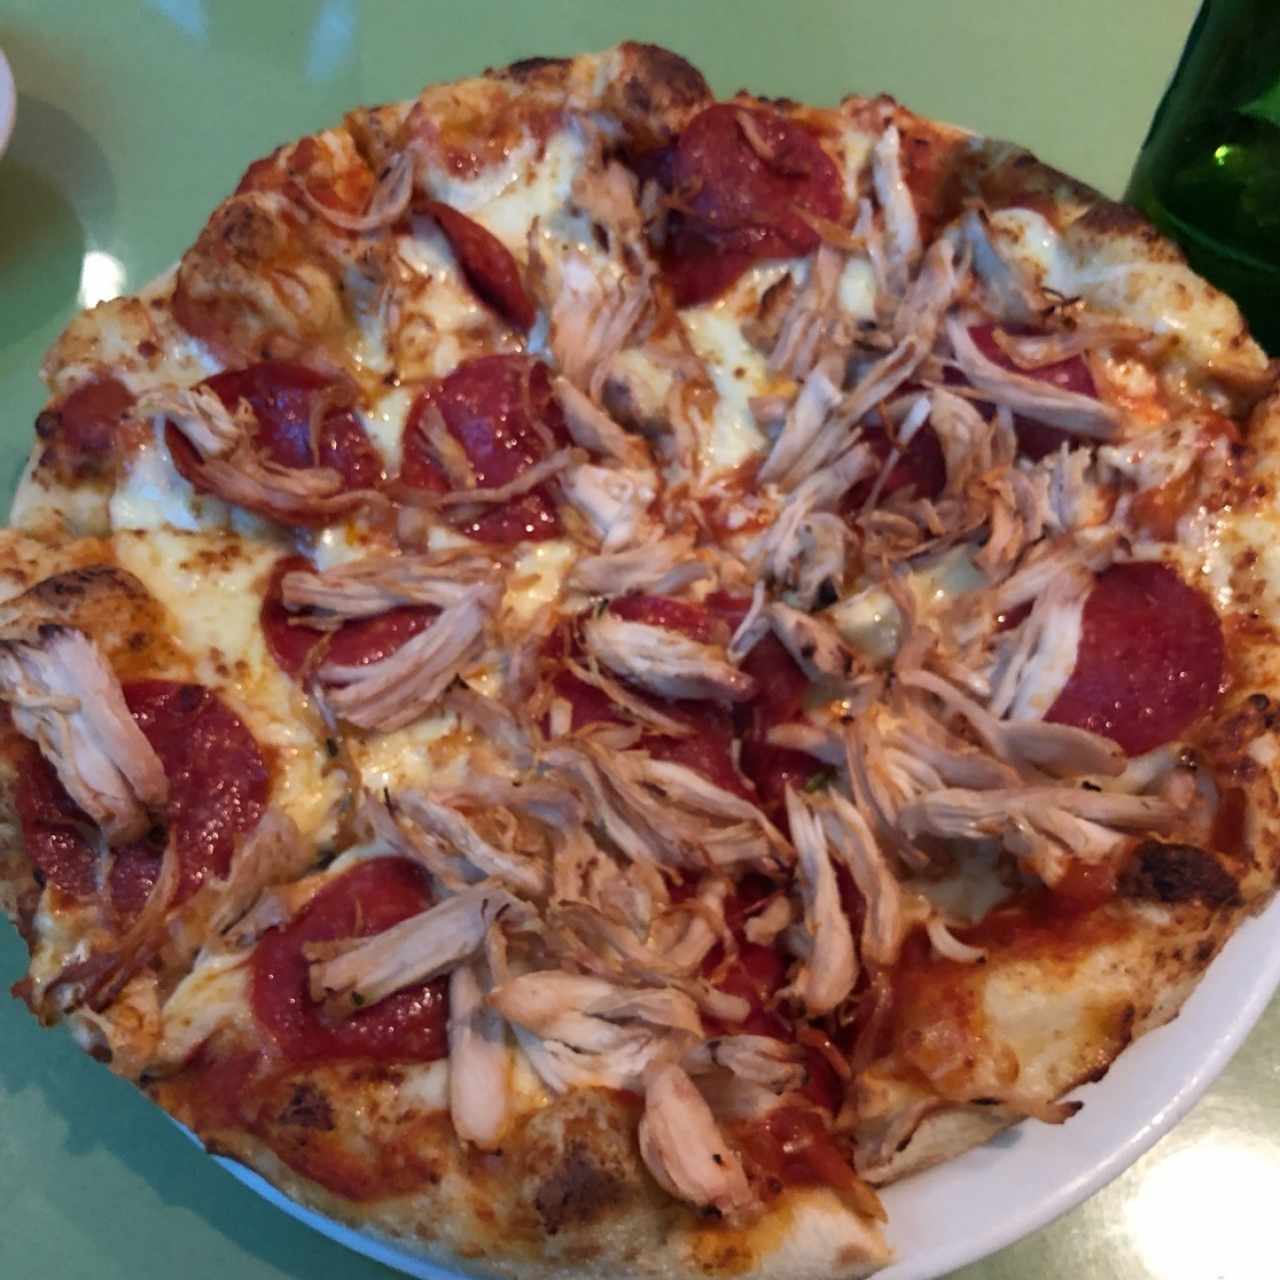 pizza de pollo y pepperoni